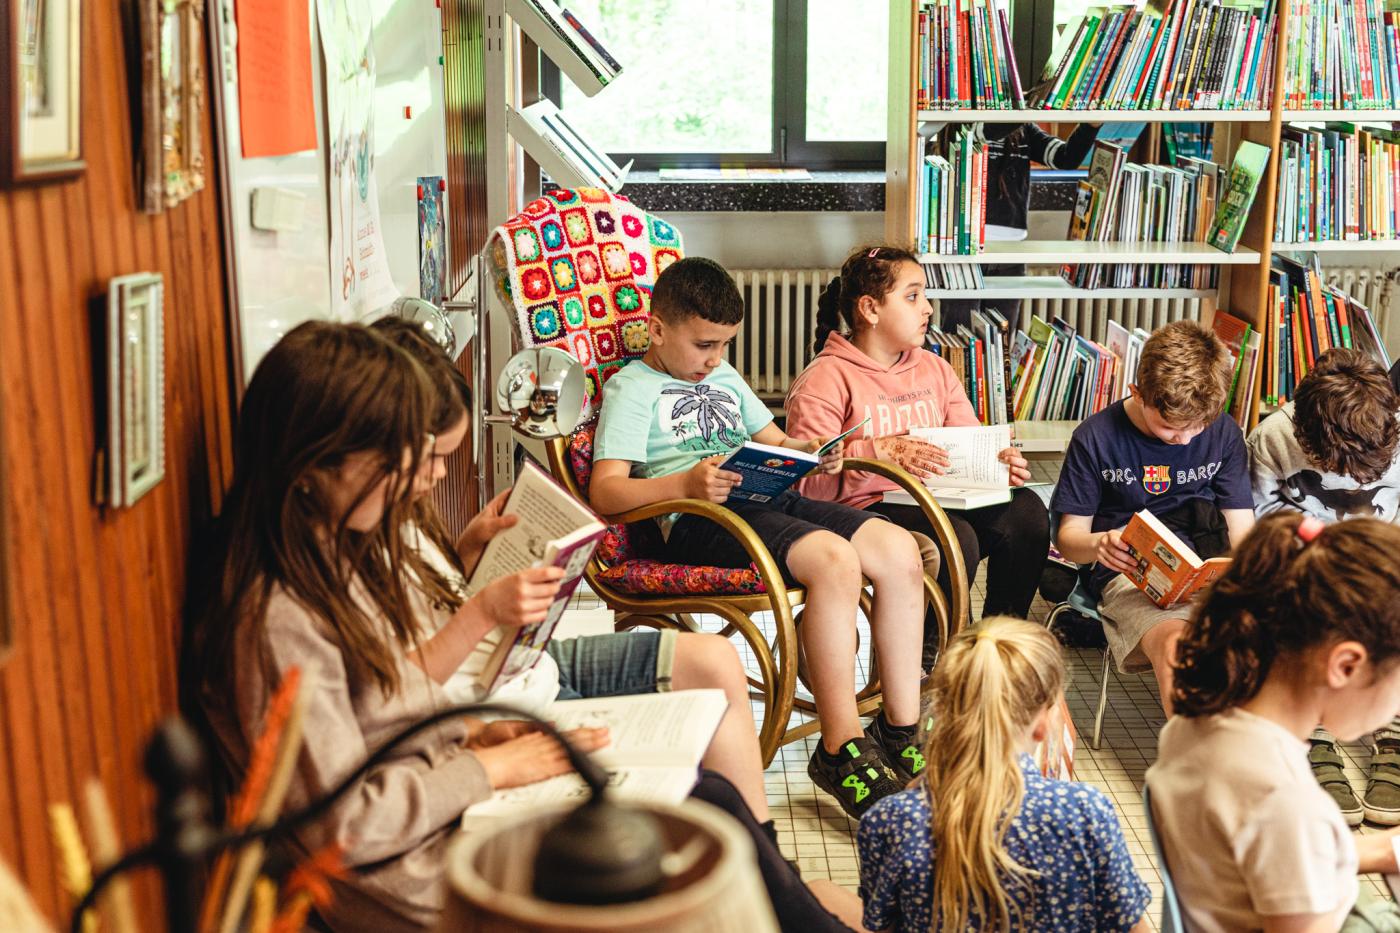 afbeelding van zittende leerlingen die een boek lezen